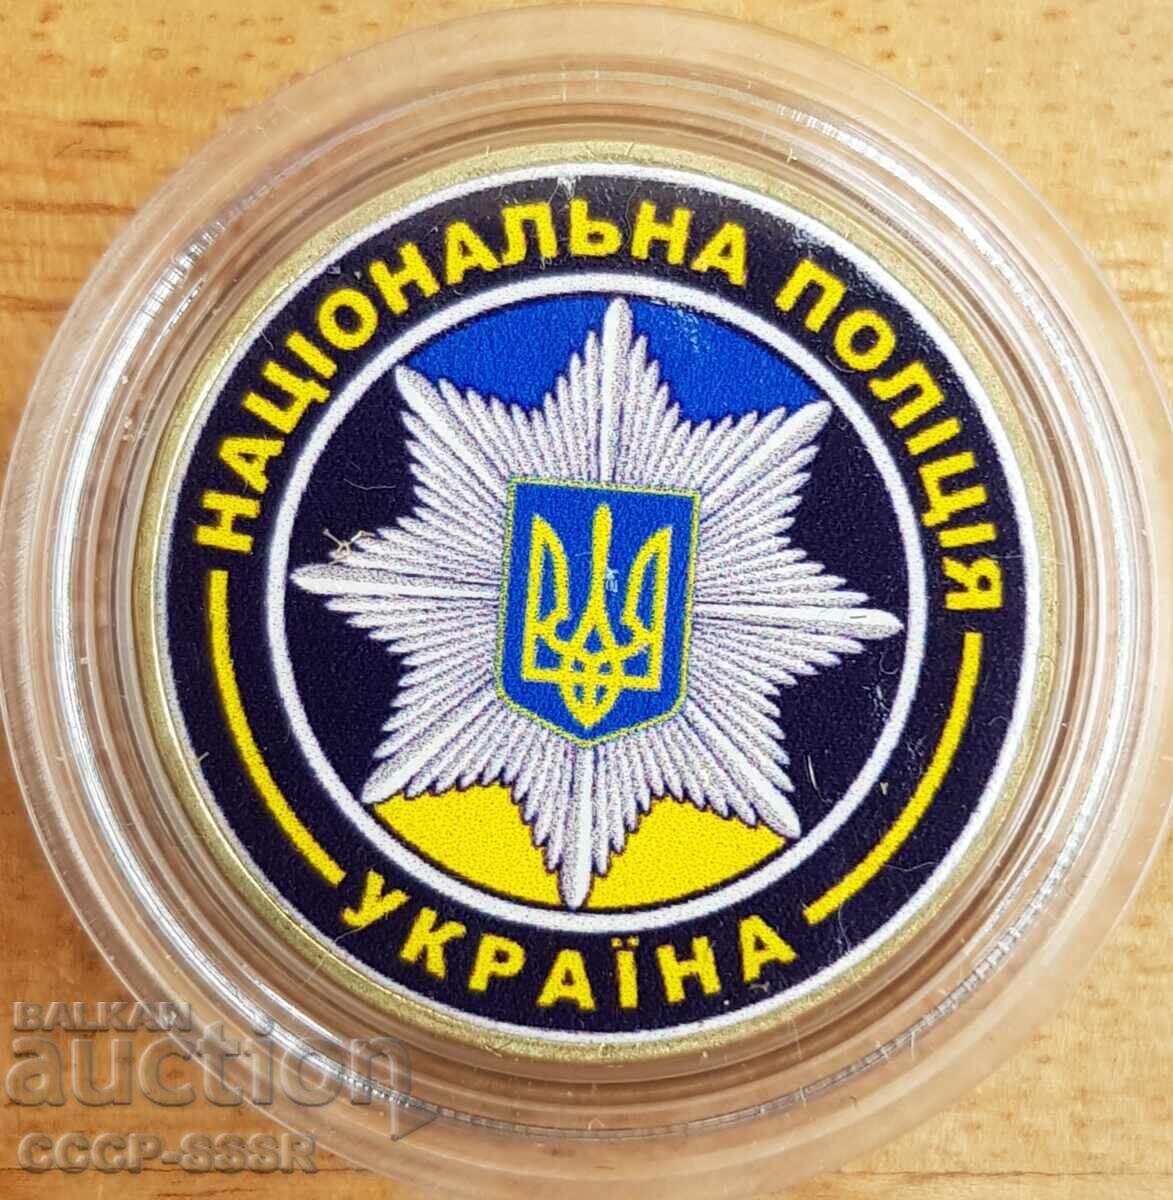 Ucraina 1 grivne, Poliția Națională a Ucrainei, ediție limitată